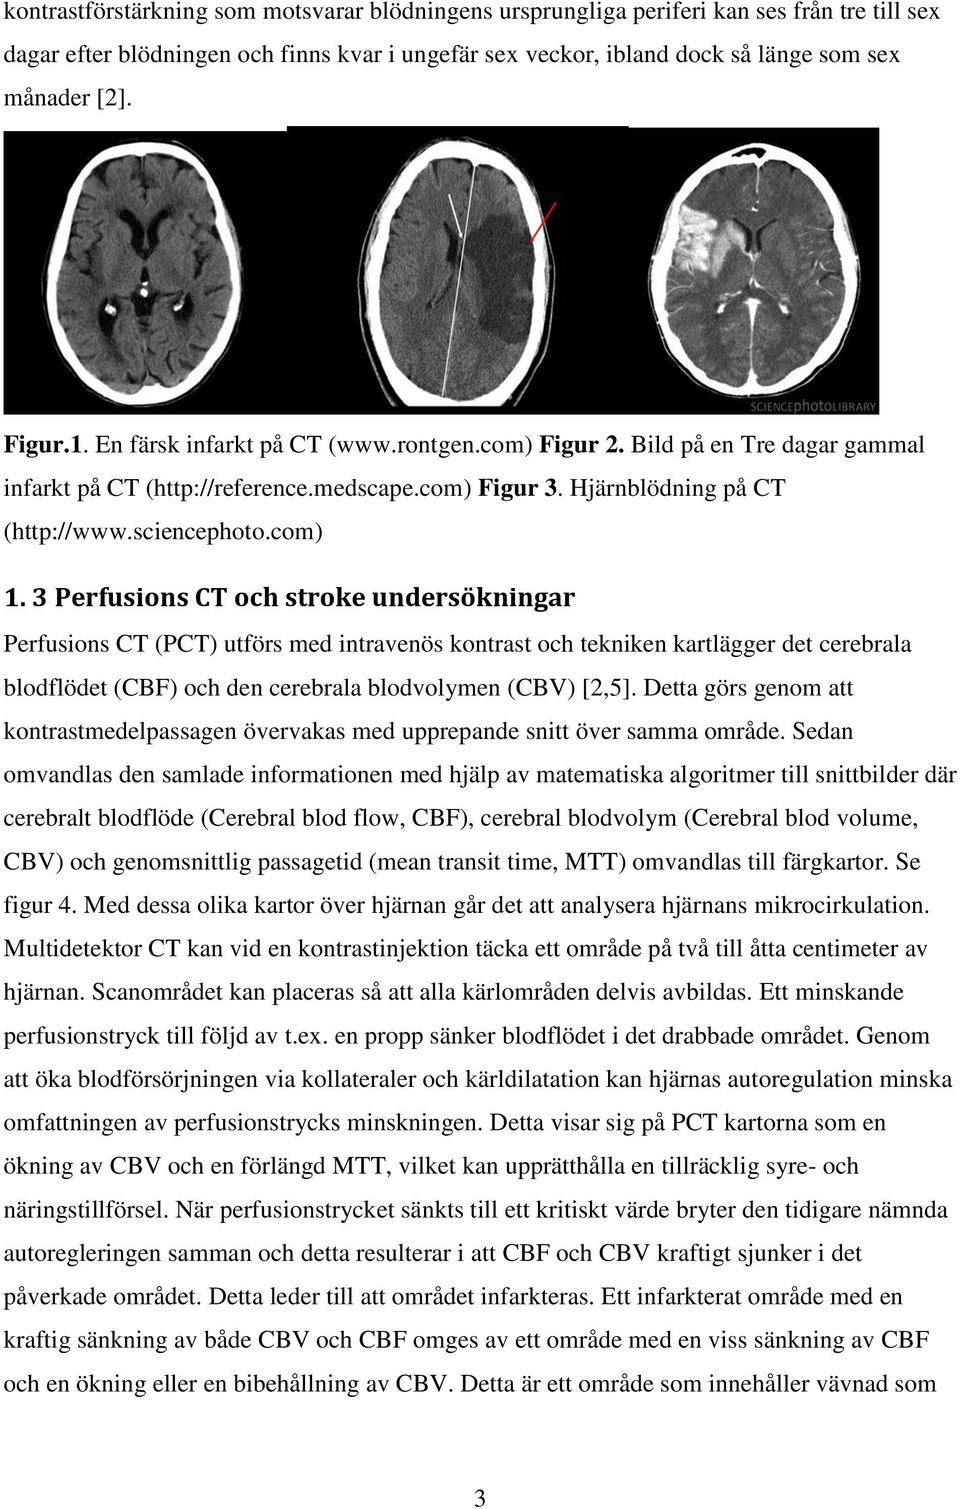 3 Perfusions CT och stroke undersökningar Perfusions CT (PCT) utförs med intravenös kontrast och tekniken kartlägger det cerebrala blodflödet (CBF) och den cerebrala blodvolymen (CBV) [2,5].